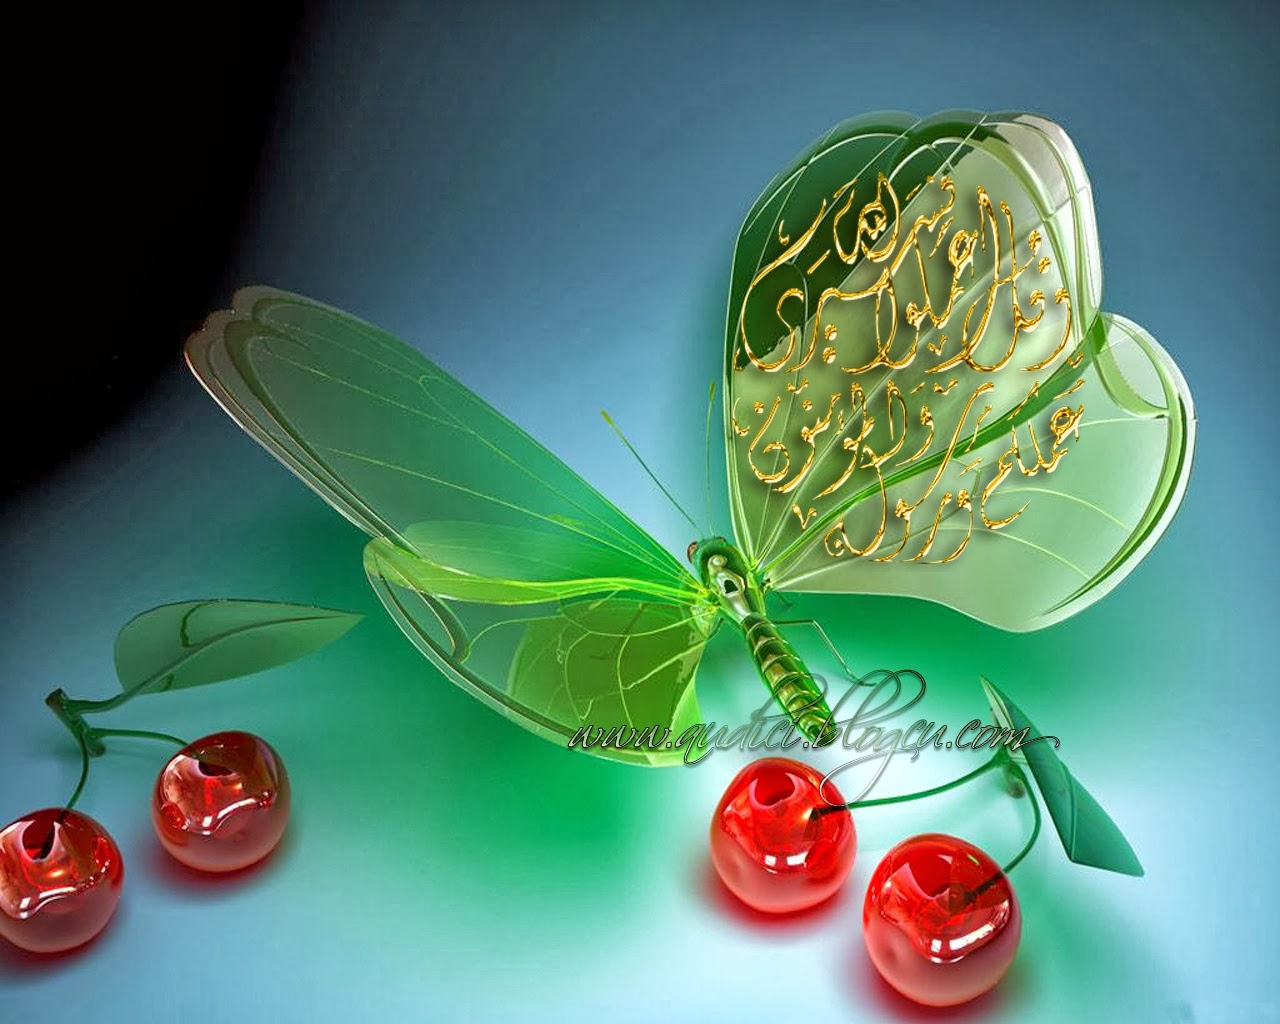 neue islamische tapete,grün,blatt,stillleben fotografie,pflanze,obst